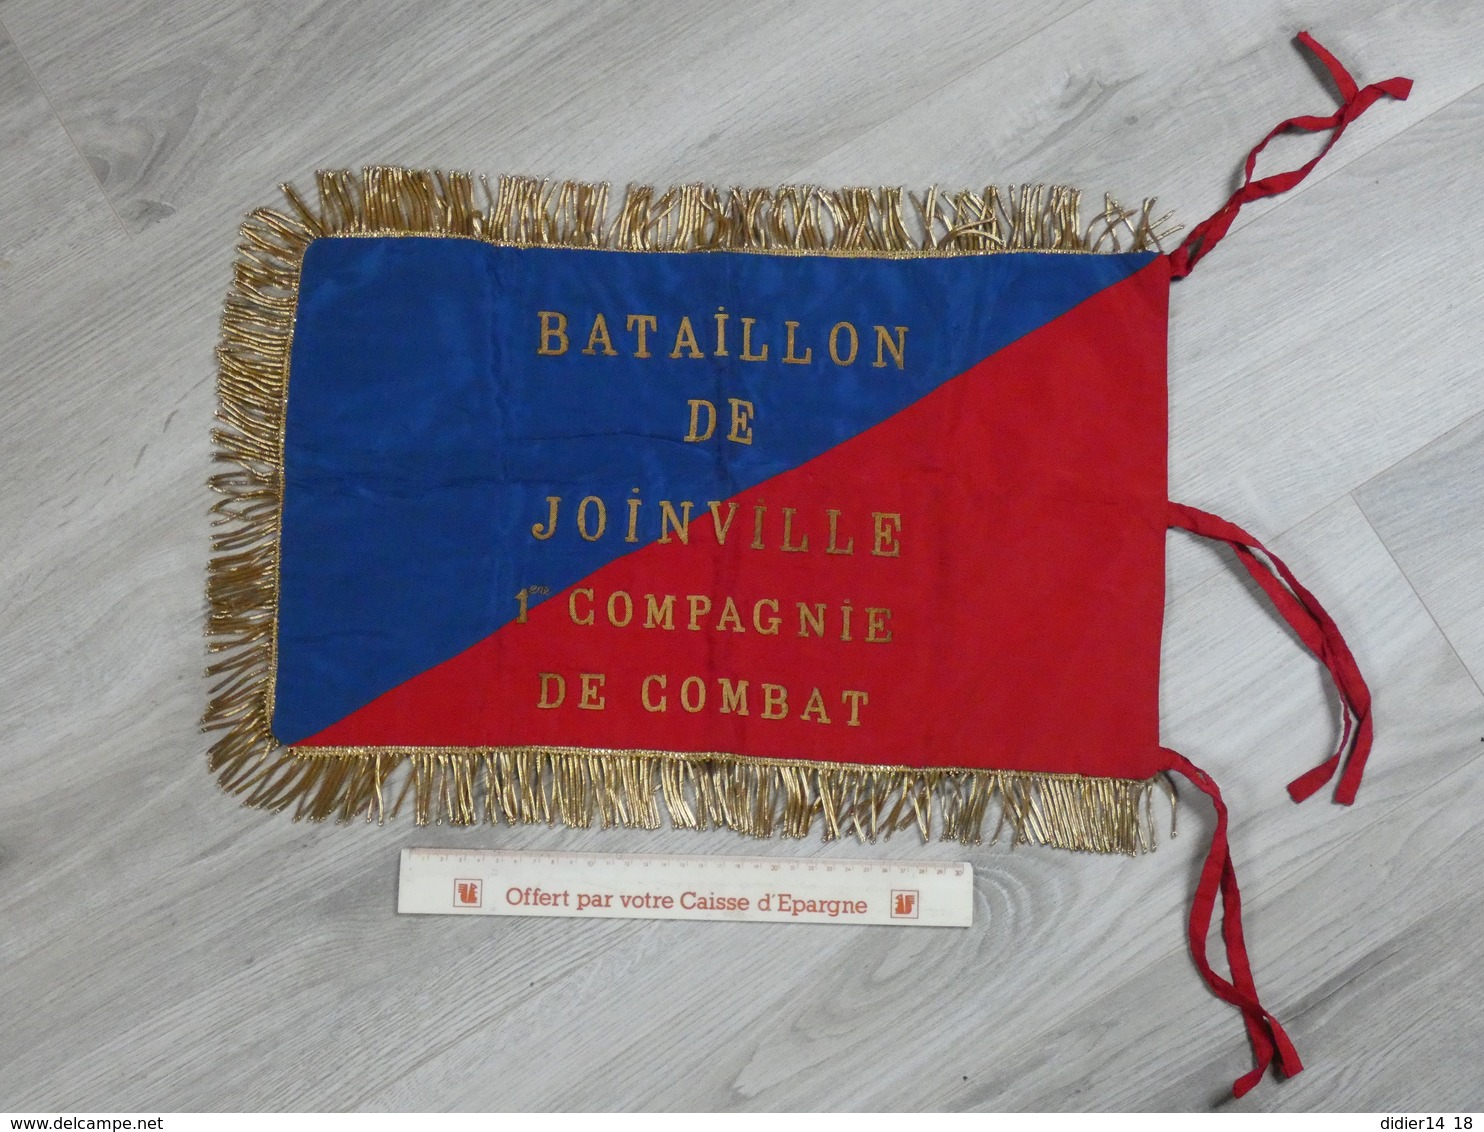 FANION BATAILLON DE JOINVILLE. 1ére Cie DE COMBAT. BRODE CANETILLE EXCELLENT ETAT. 50X30CM - Drapeaux